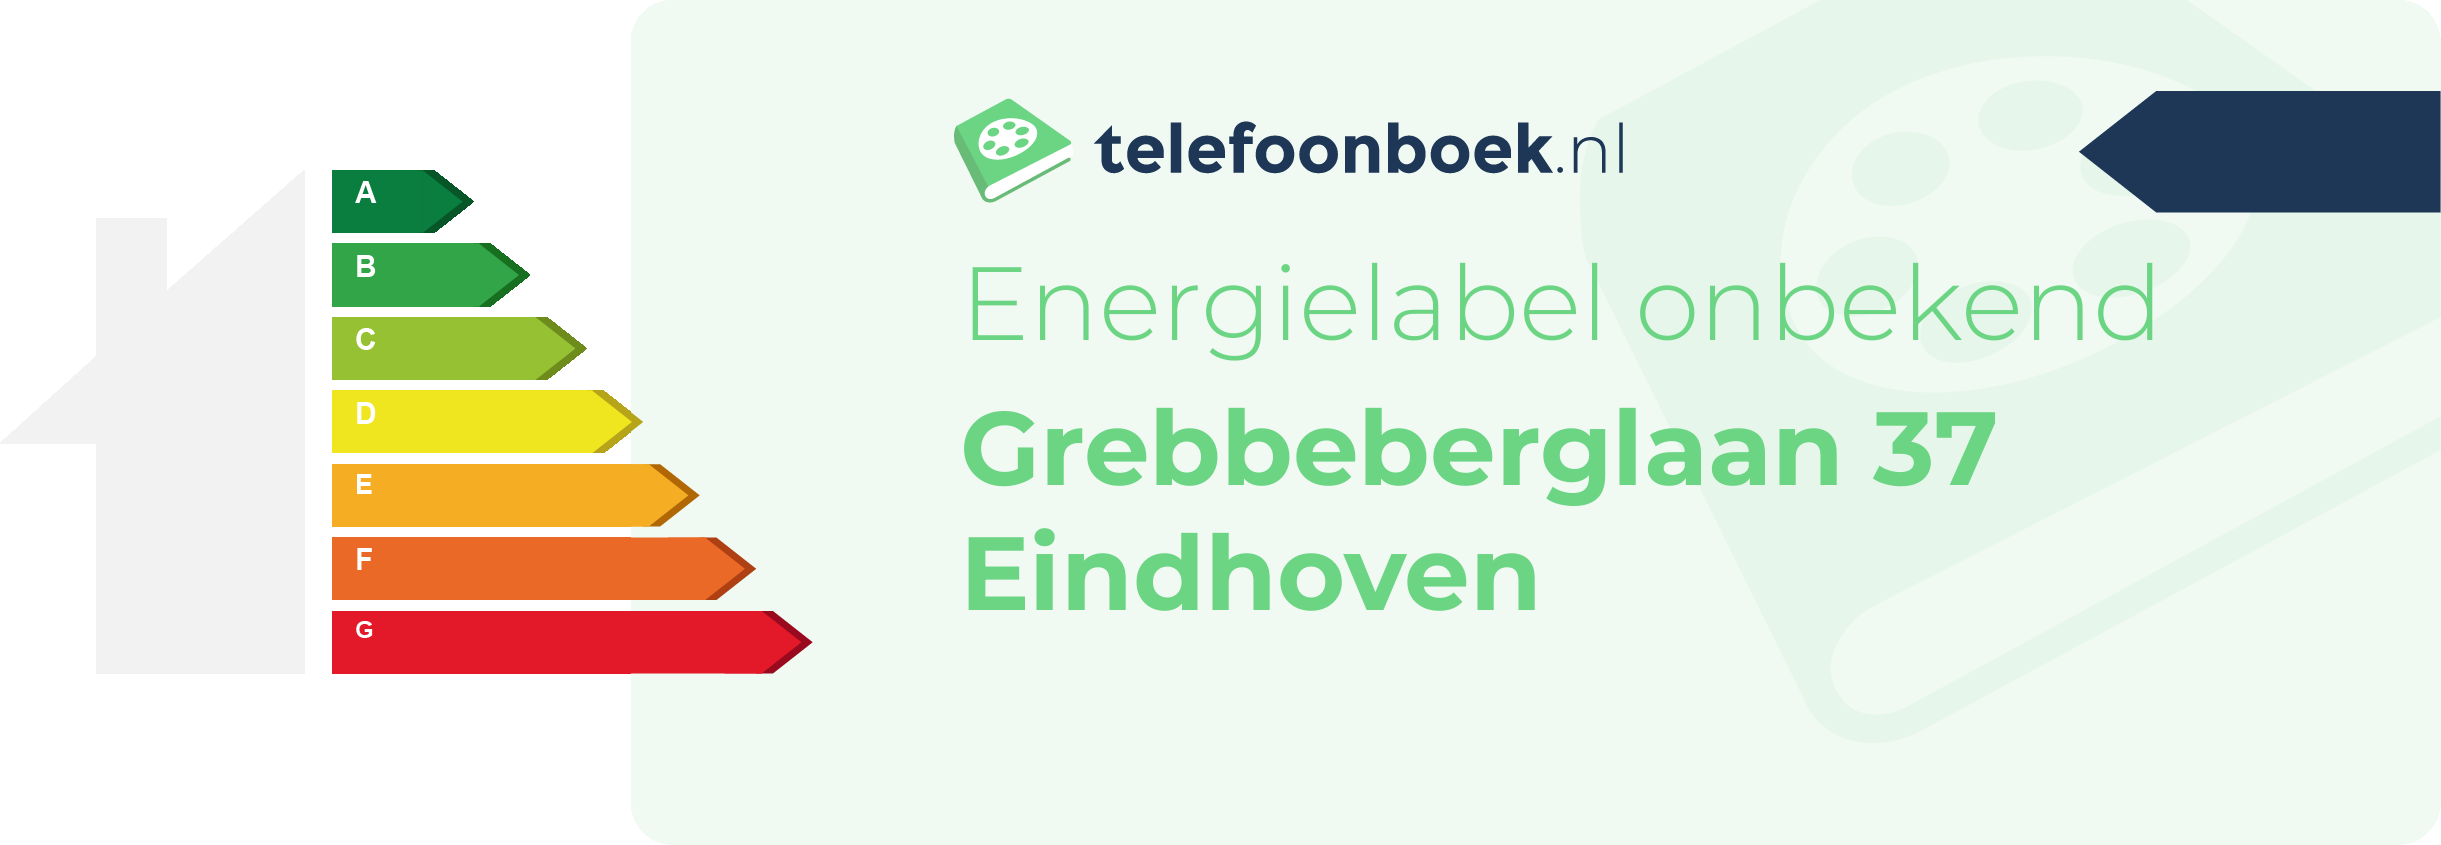 Energielabel Grebbeberglaan 37 Eindhoven